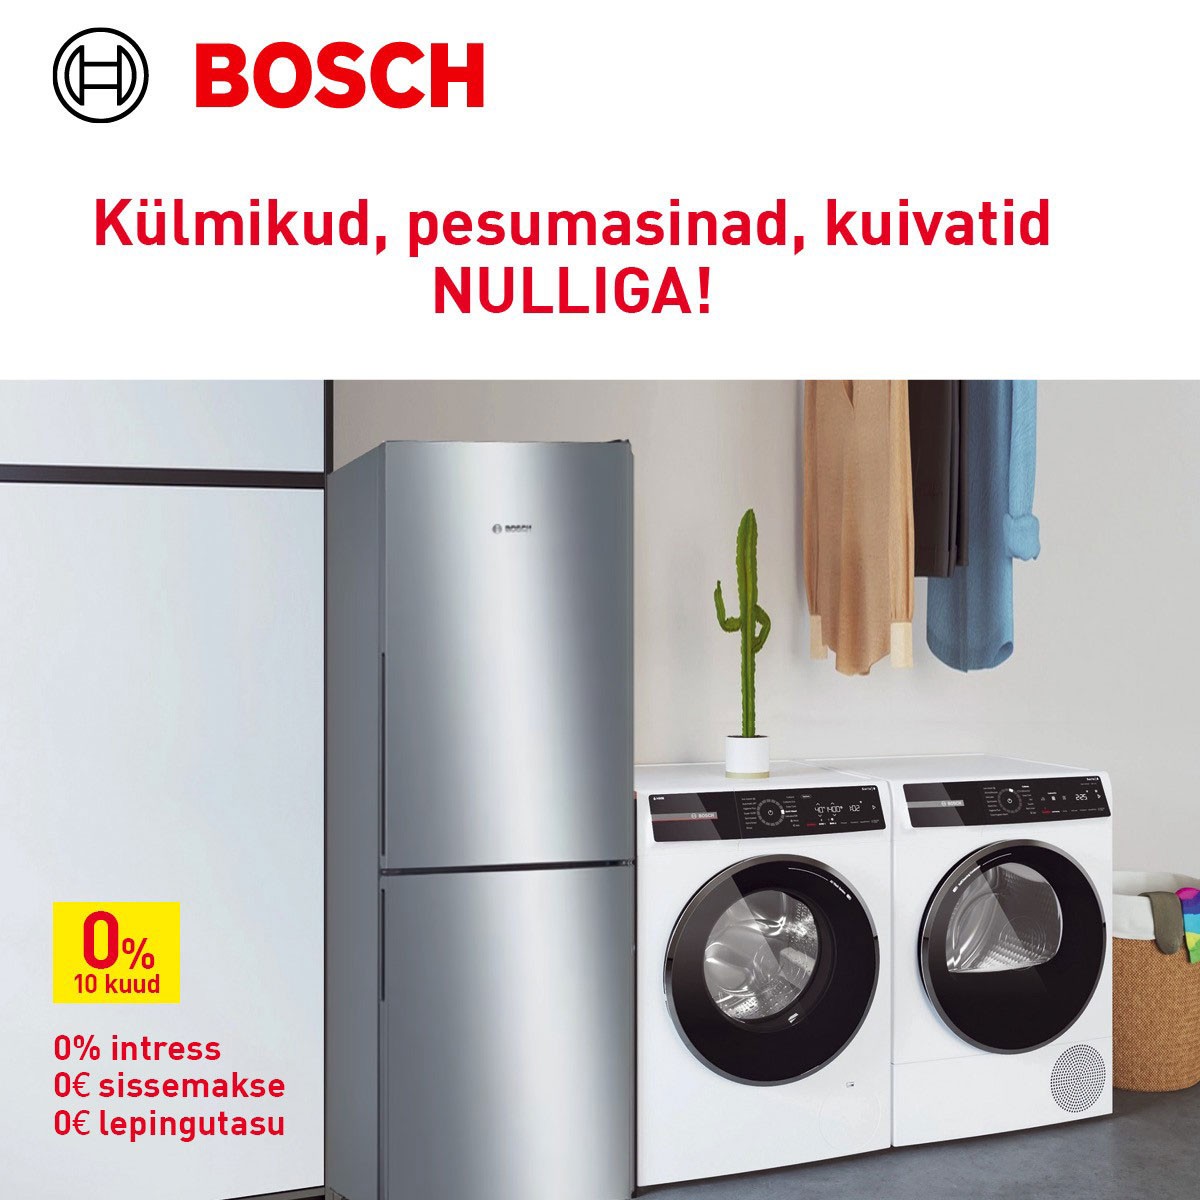 Bosch 0 %